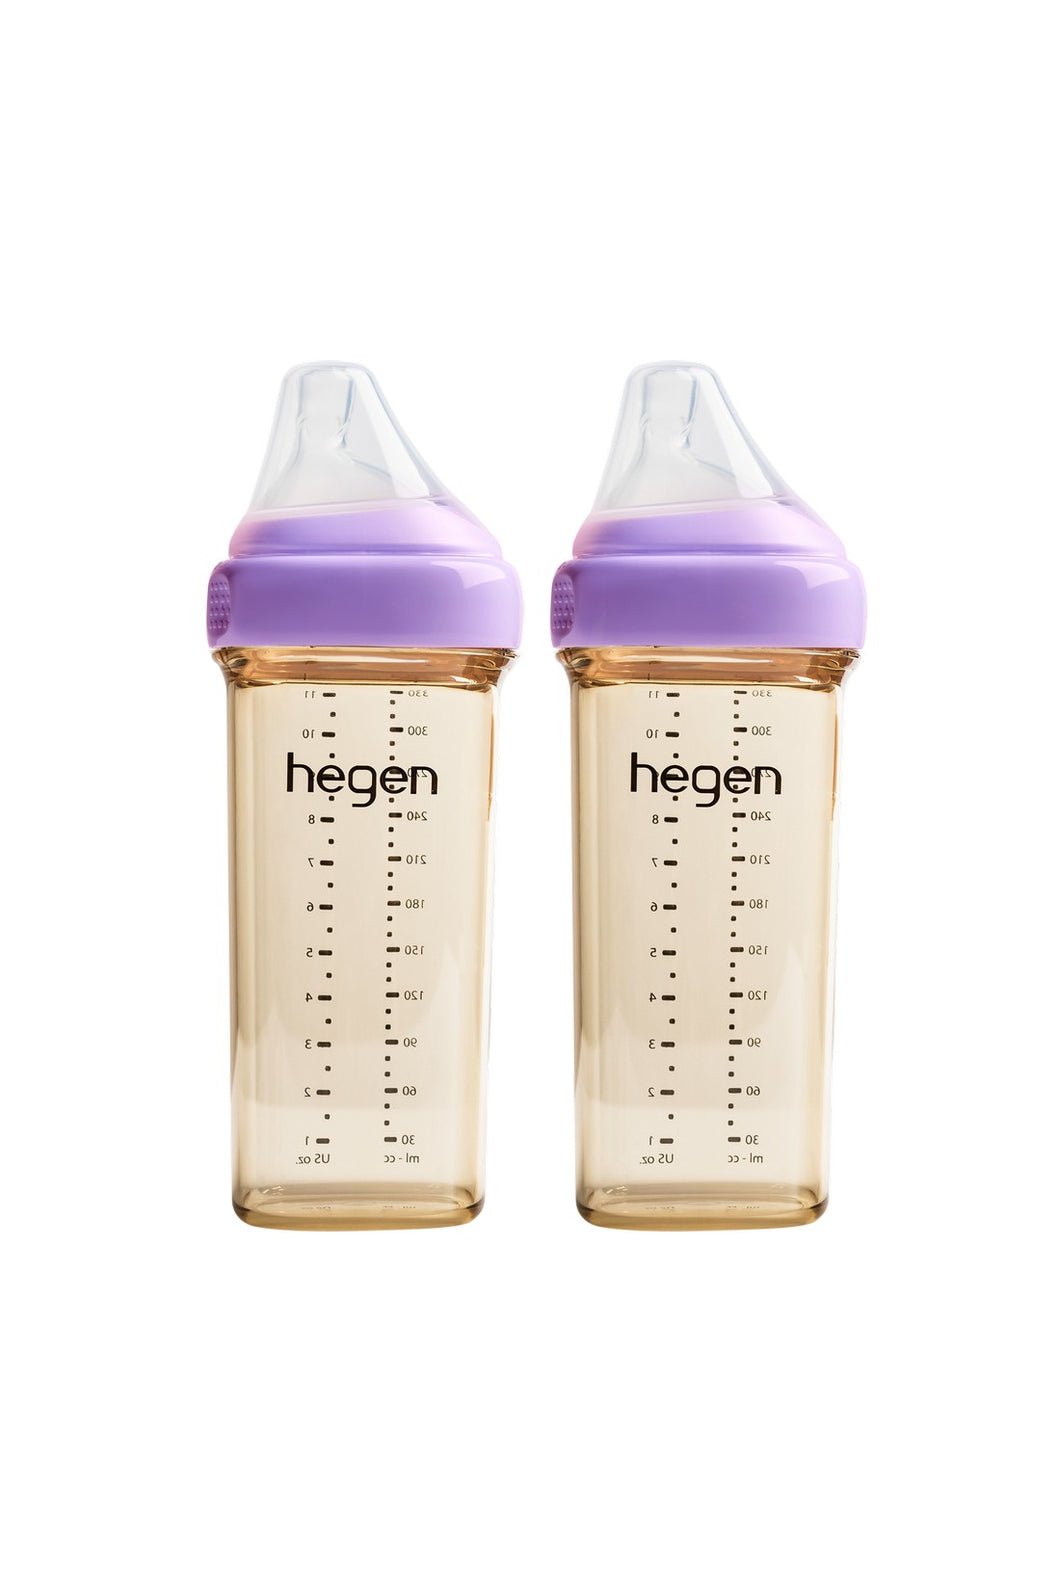 Hegen Pcto™ 330ml/11oz Feeding Bottle PPSU, 2 pack - Purple 1